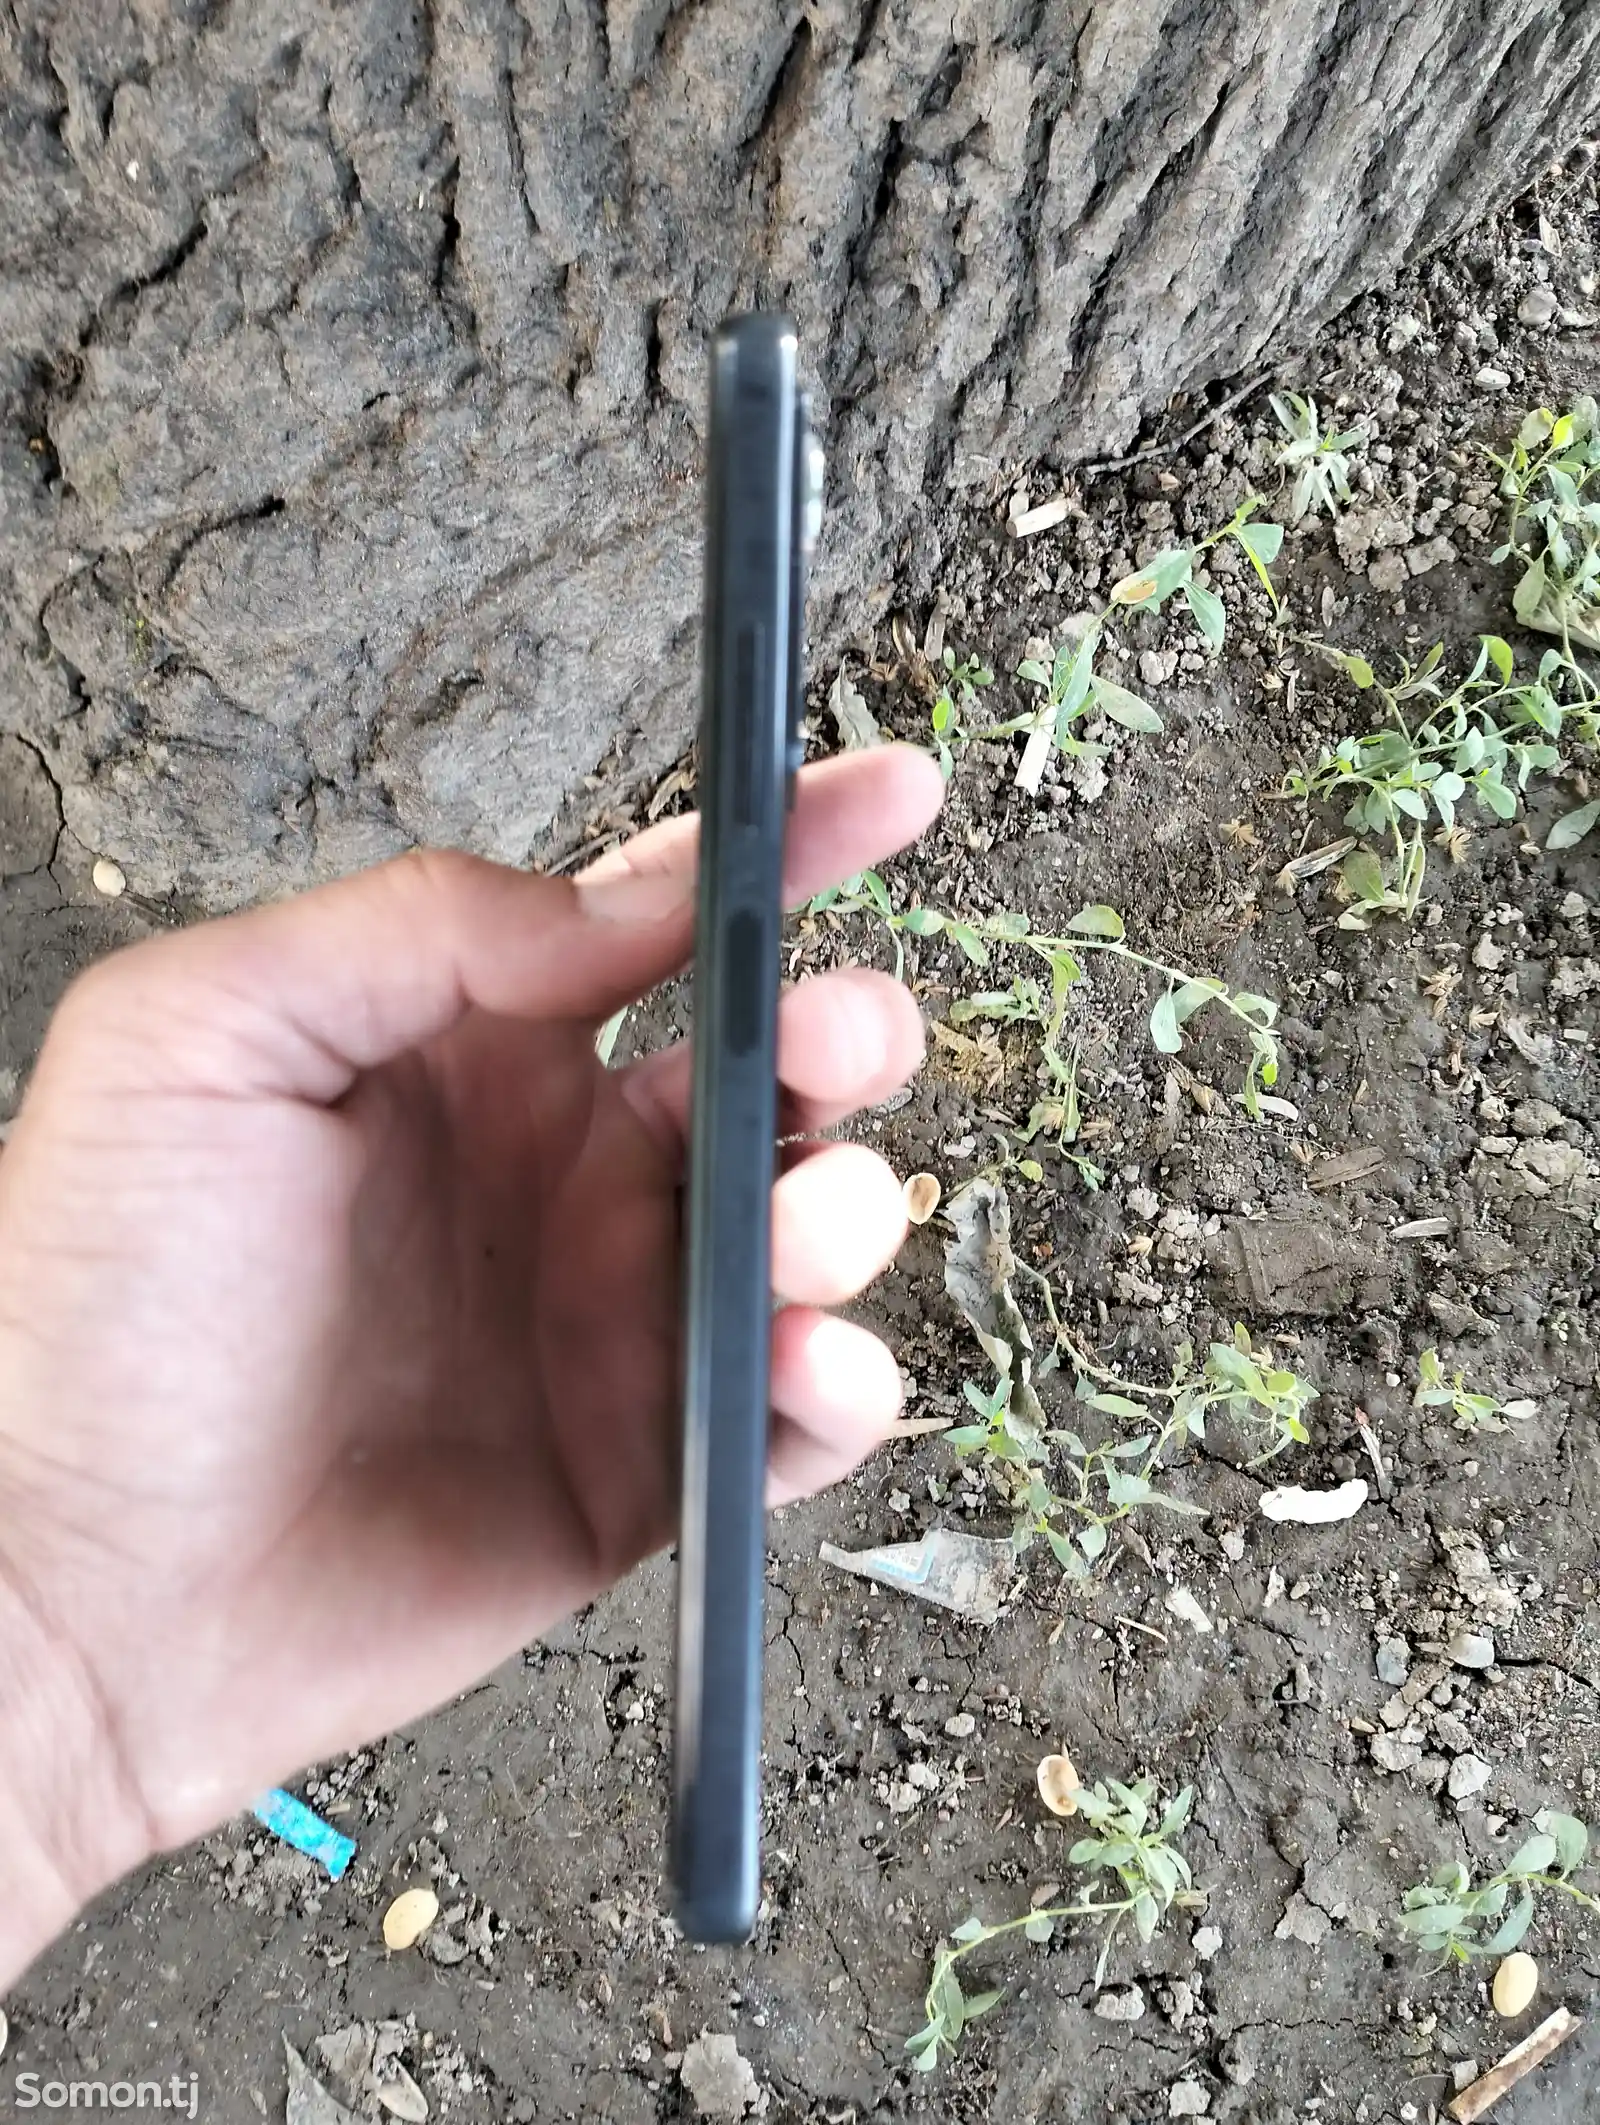 Xiaomi Redmi note 12 pro-2